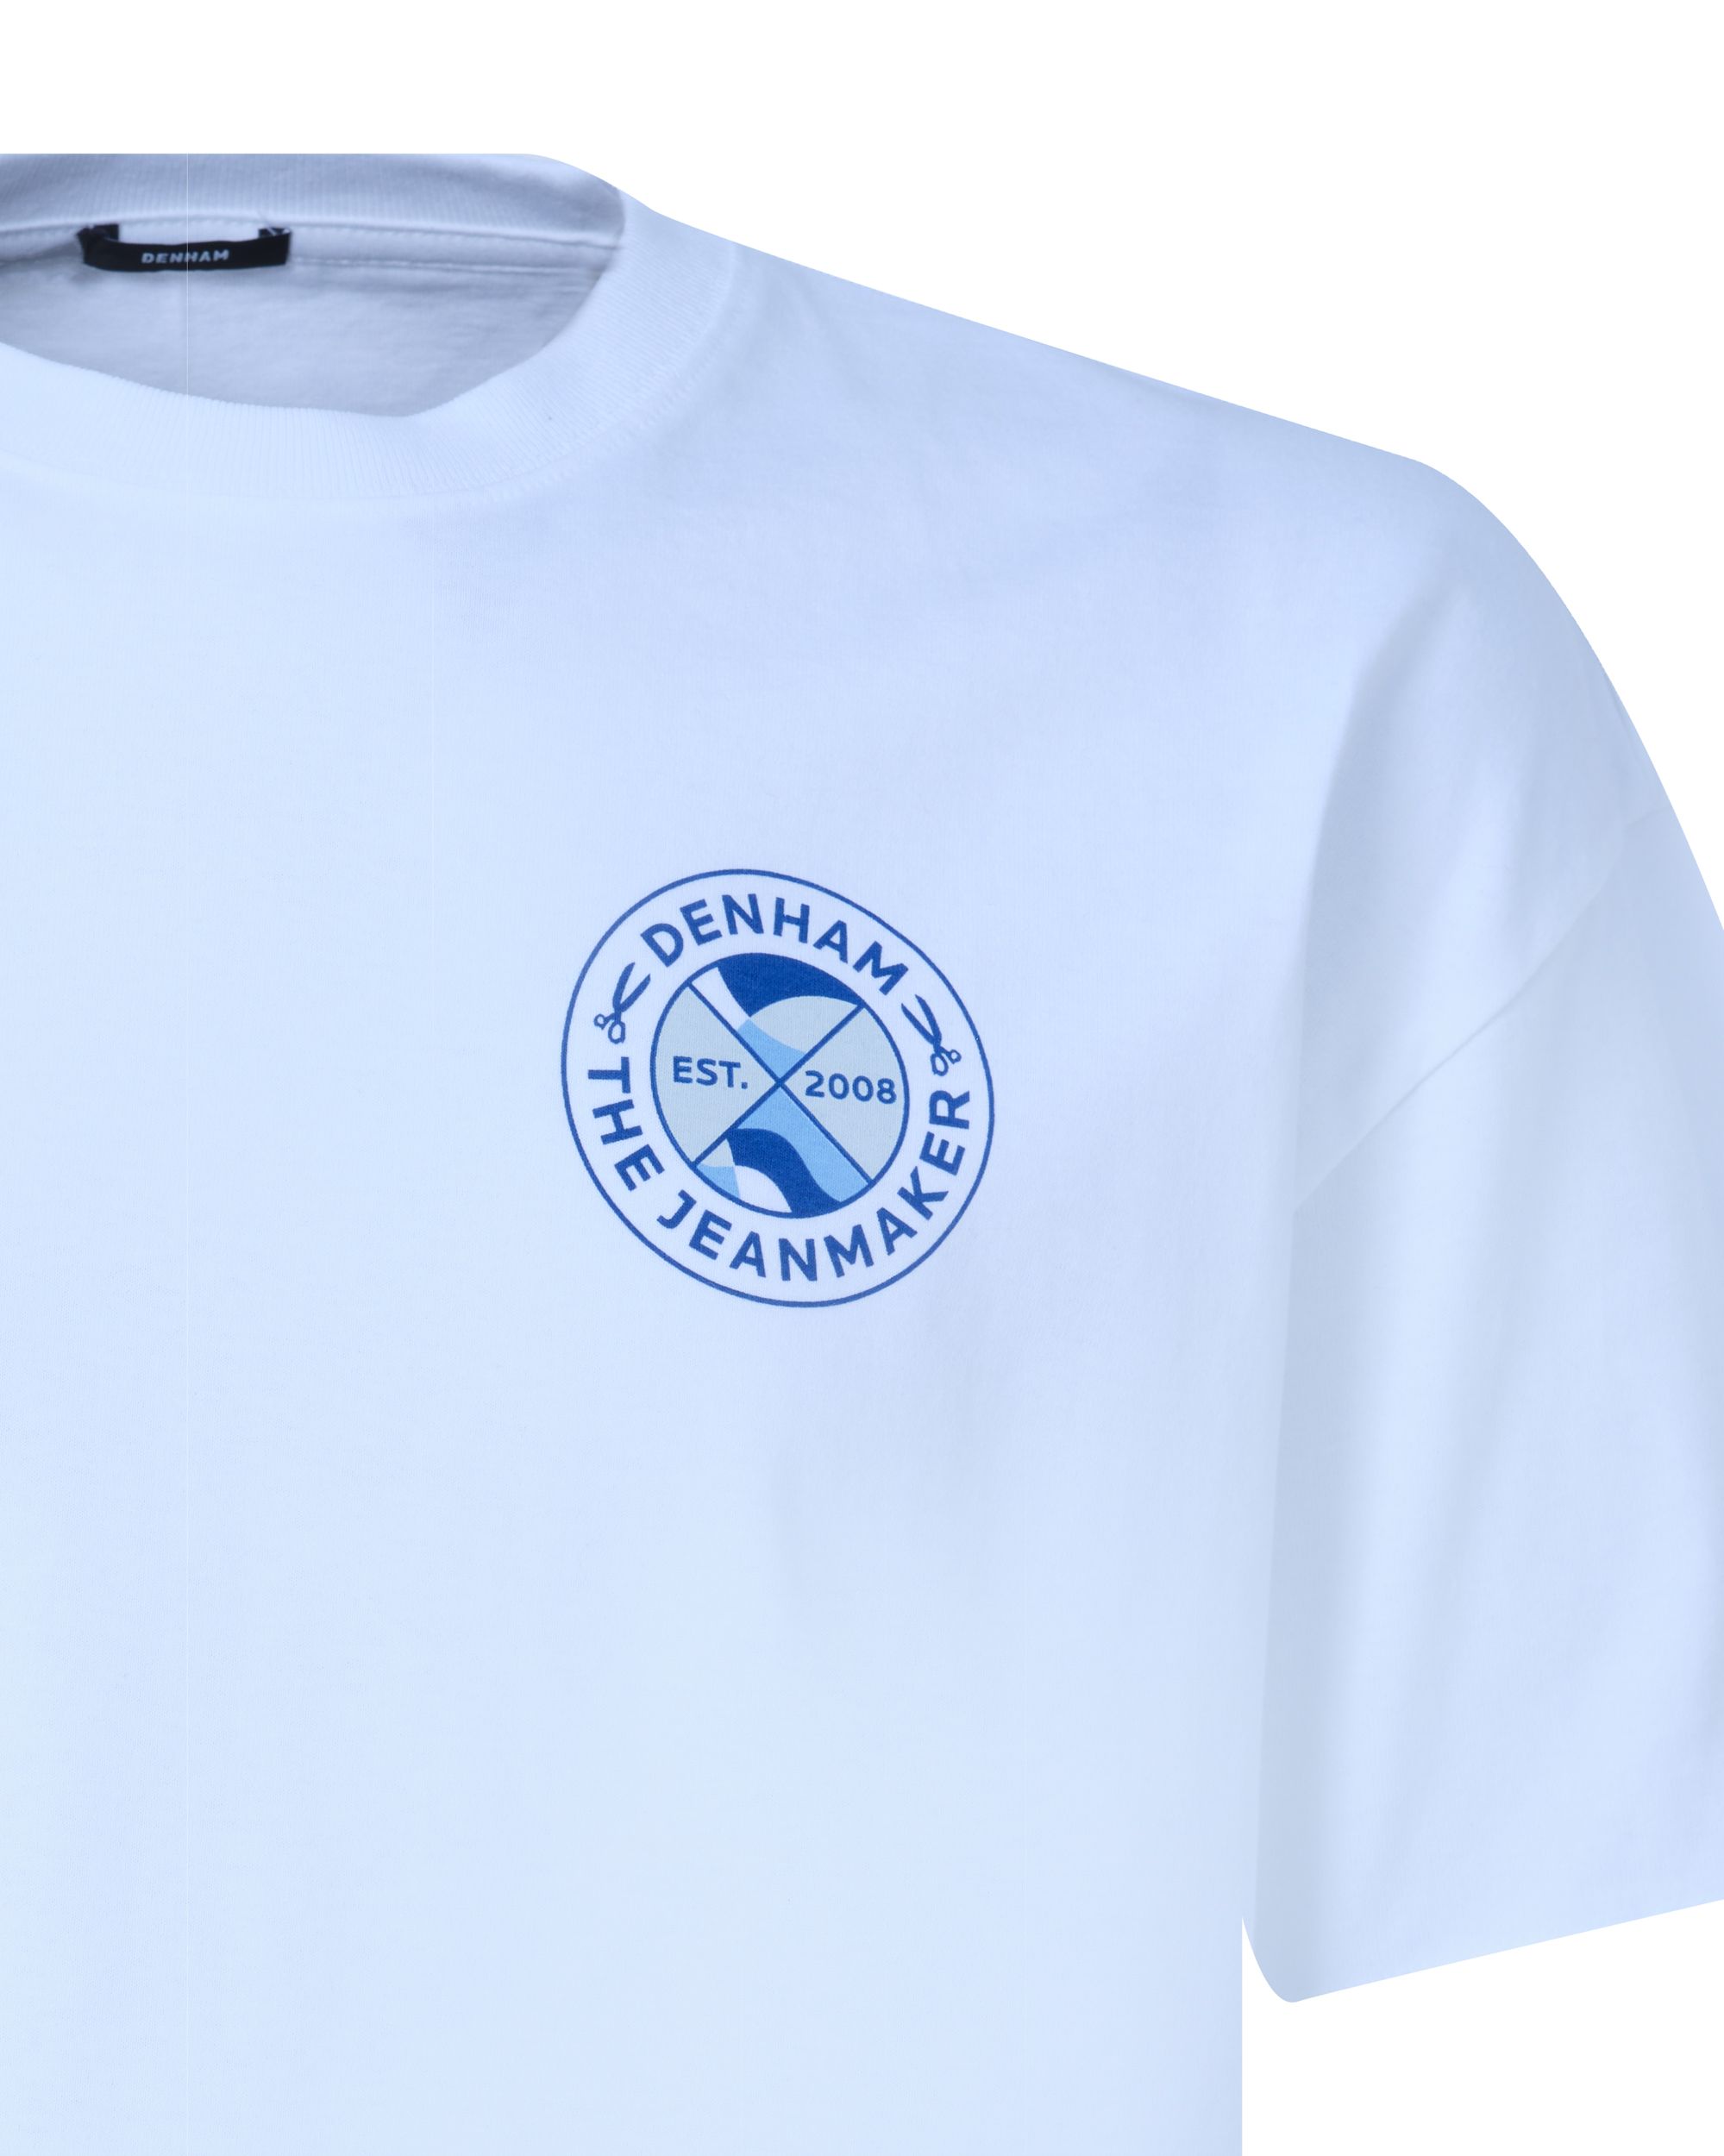 DENHAM Soho Box T-shirt KM Wit 089103-001-L